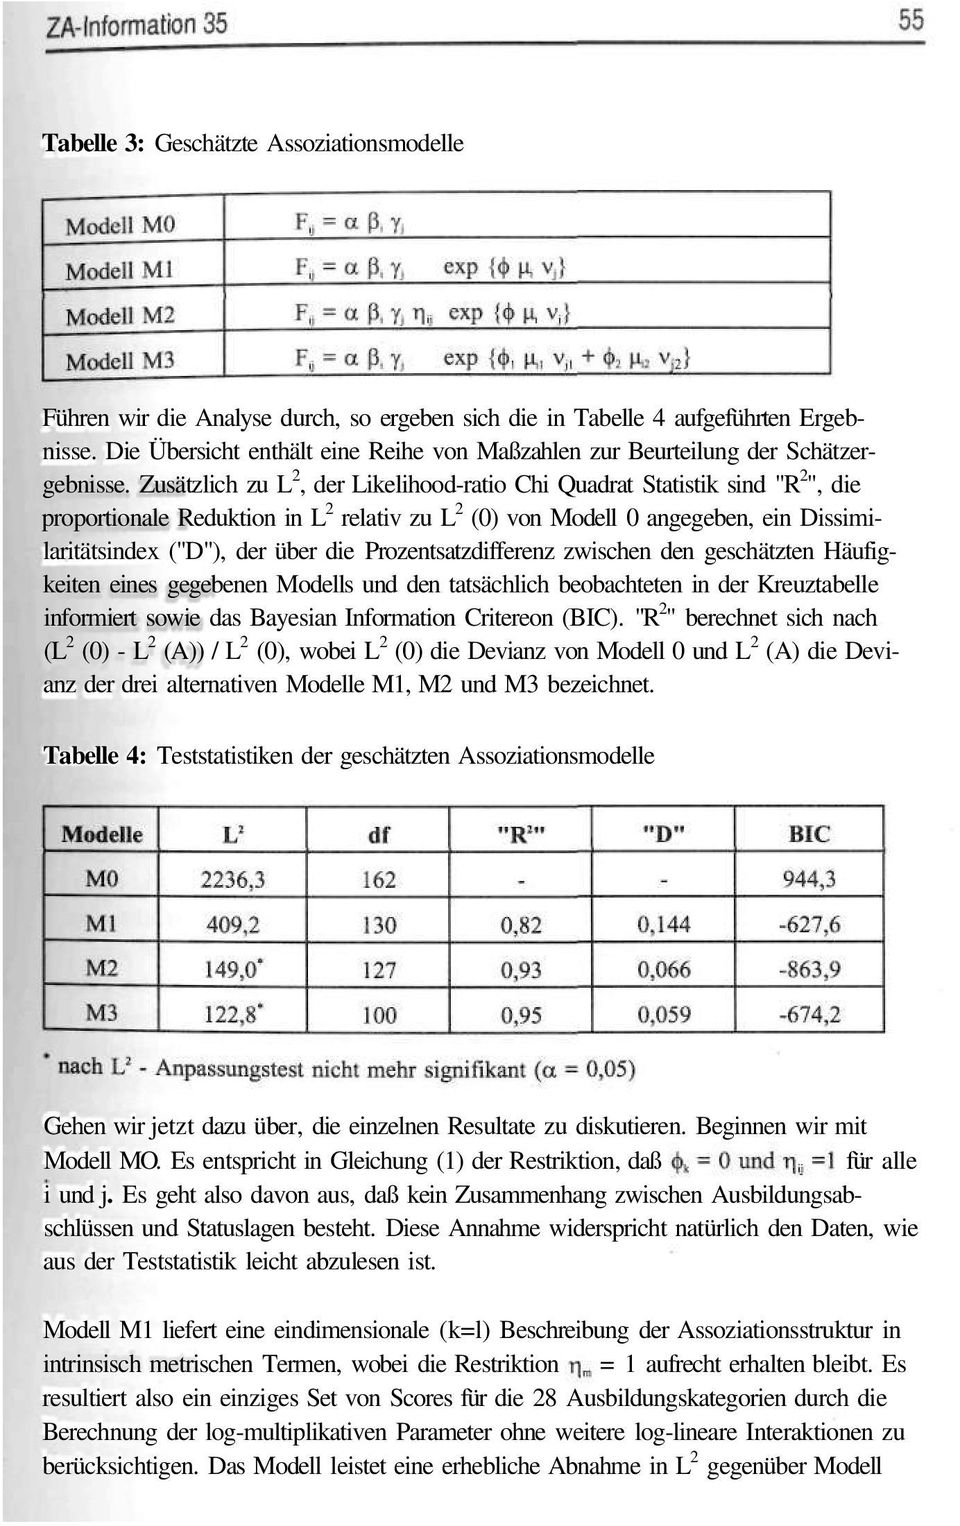 Zusätzlich zu L 2, der Likelihood-ratio Chi Quadrat Statistik sind "R 2 ", die proportionale Reduktion in L 2 relativ zu L 2 (0) von Modell 0 angegeben, ein Dissimilaritätsindex ("D"), der über die